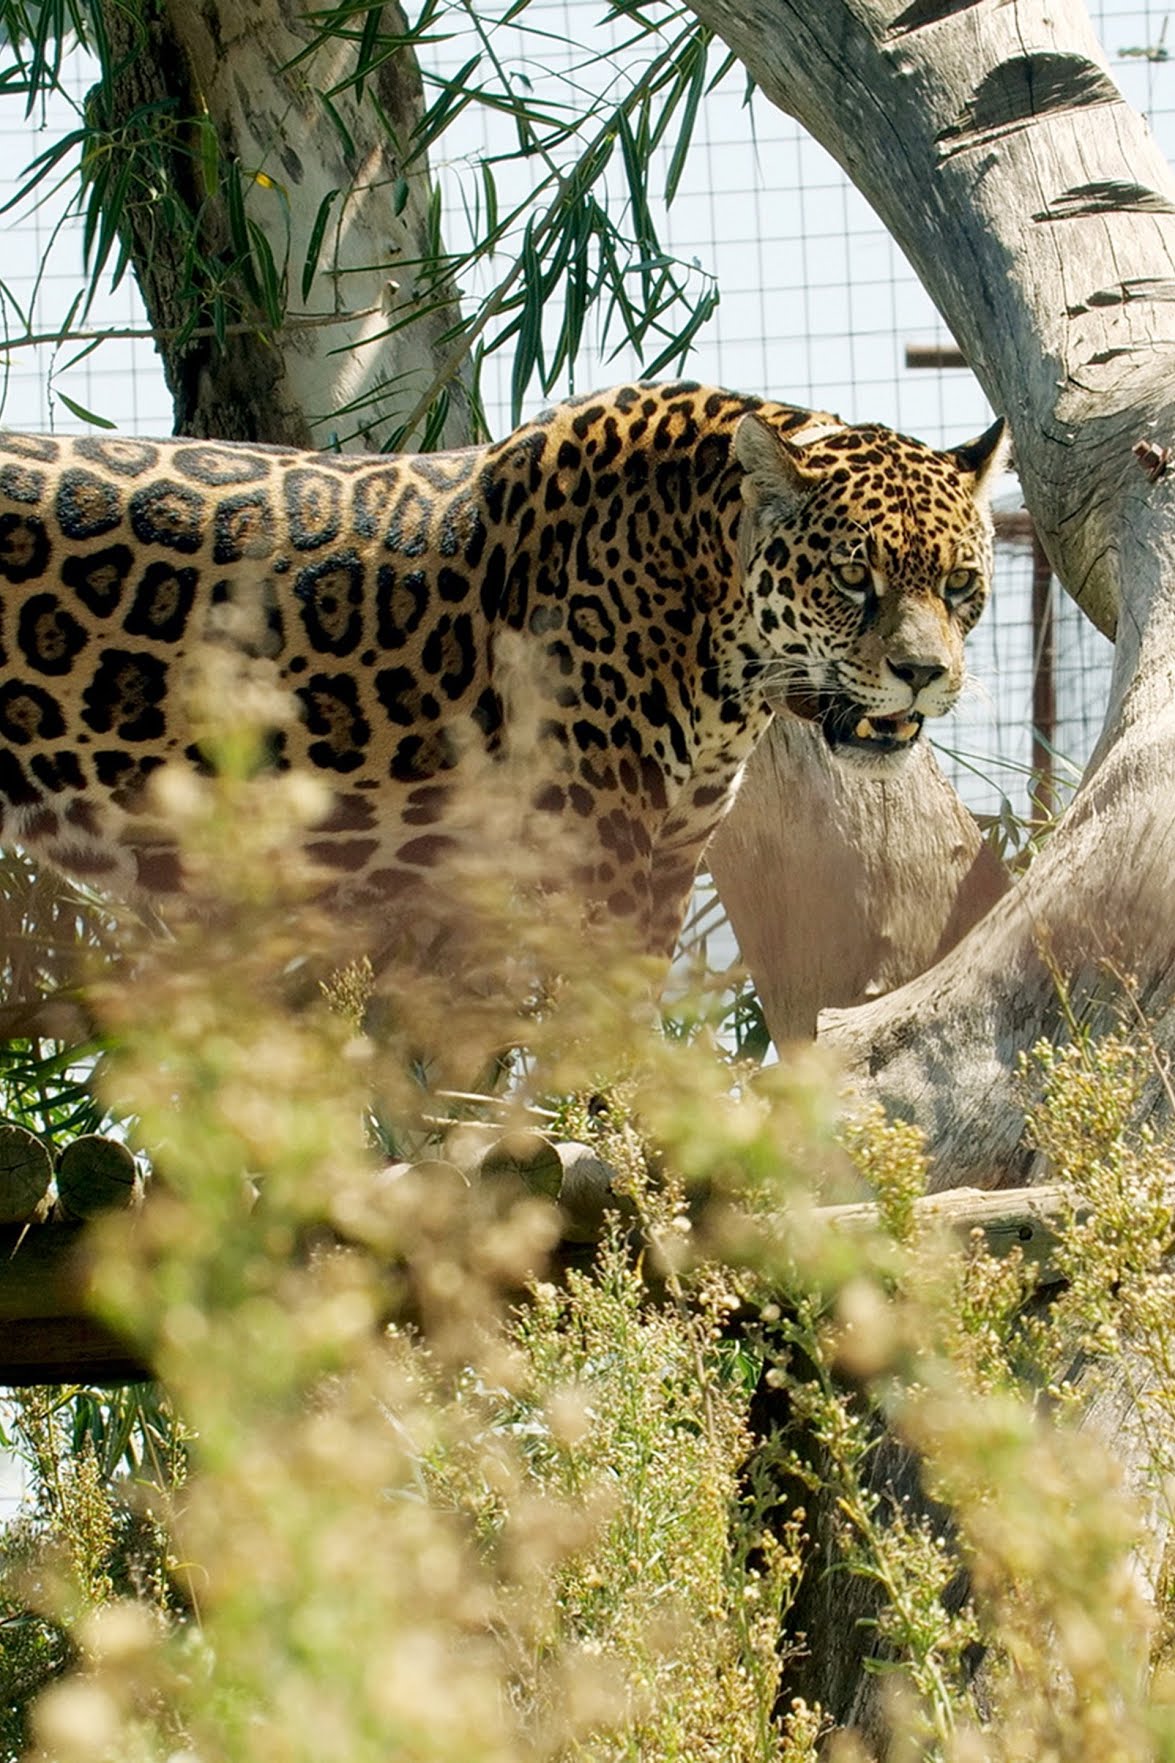 aguare, die größten Raubkatzen Südamerikas, waren schon immer beliebte Jagdobjekte. Die indigenen Völker der Region waren auf ihre Felle aus, die spanischen Eroberer ebenso, und die Viehzüchter sahen in ihnen eine Bedrohung für ihre Herden. Aber erst zu Beginn des 20. Jahrhunderts wurde der Lebensraum der Jaguare durch die Viehzüchter so stark eingeschränkt, dass sie als ausgerottet galten. Heute sollen die Katzen wieder angesiedelt werden. Fünf erwachsene Jaguare wurden dafür aus der Gefangenschaft in ein eigens gegründetes Aufzuchtzentrum auf den Esteros del Iberá, dem größten Feuchtgebiet Argentiniens, gebracht. Hier sollen sie für Nachwuchs sorgen, der dann ausgewildert werden soll. Das Problem ist, dass besonders die drei weiblichen Tiere Defizite haben, die eine Zucht erschweren: Tanja fehlt ein Hinterbein, das sie als Jungtier verloren hat.
Isis ist so sehr an Menschen gewöhnt, dass sie Angst vor den eigenen Artgenossen hat. Und Tobuna ist mit 17 Jahren fast zu alt für die Zucht. Die Wissenschaftler haben damit die Qual der Wahl. Dennoch soll das Unternehmen unbedingt gelingen. Zwei Jahre und viel Geld waren nötig, um den Auslauf für die Jaguare zu bauen. Vier Areale von jeweils 1.200 Quadratmetern, zwei für die Mütter und ihre Nachkommen von anderthalb Hektar und ein riesiges Gebiet von 30 Hektar für die Phase vor der endgültigen Auswilderung. Für welches Tier werden sich die Experten um die Biologin Maite Rios Noya am Ende entscheiden? Und wird die Paarung klappen? Wenn ja, könnten in frühestens zwei Jahren wieder wilde Jaguare durch die Esteros del Iberá streifen